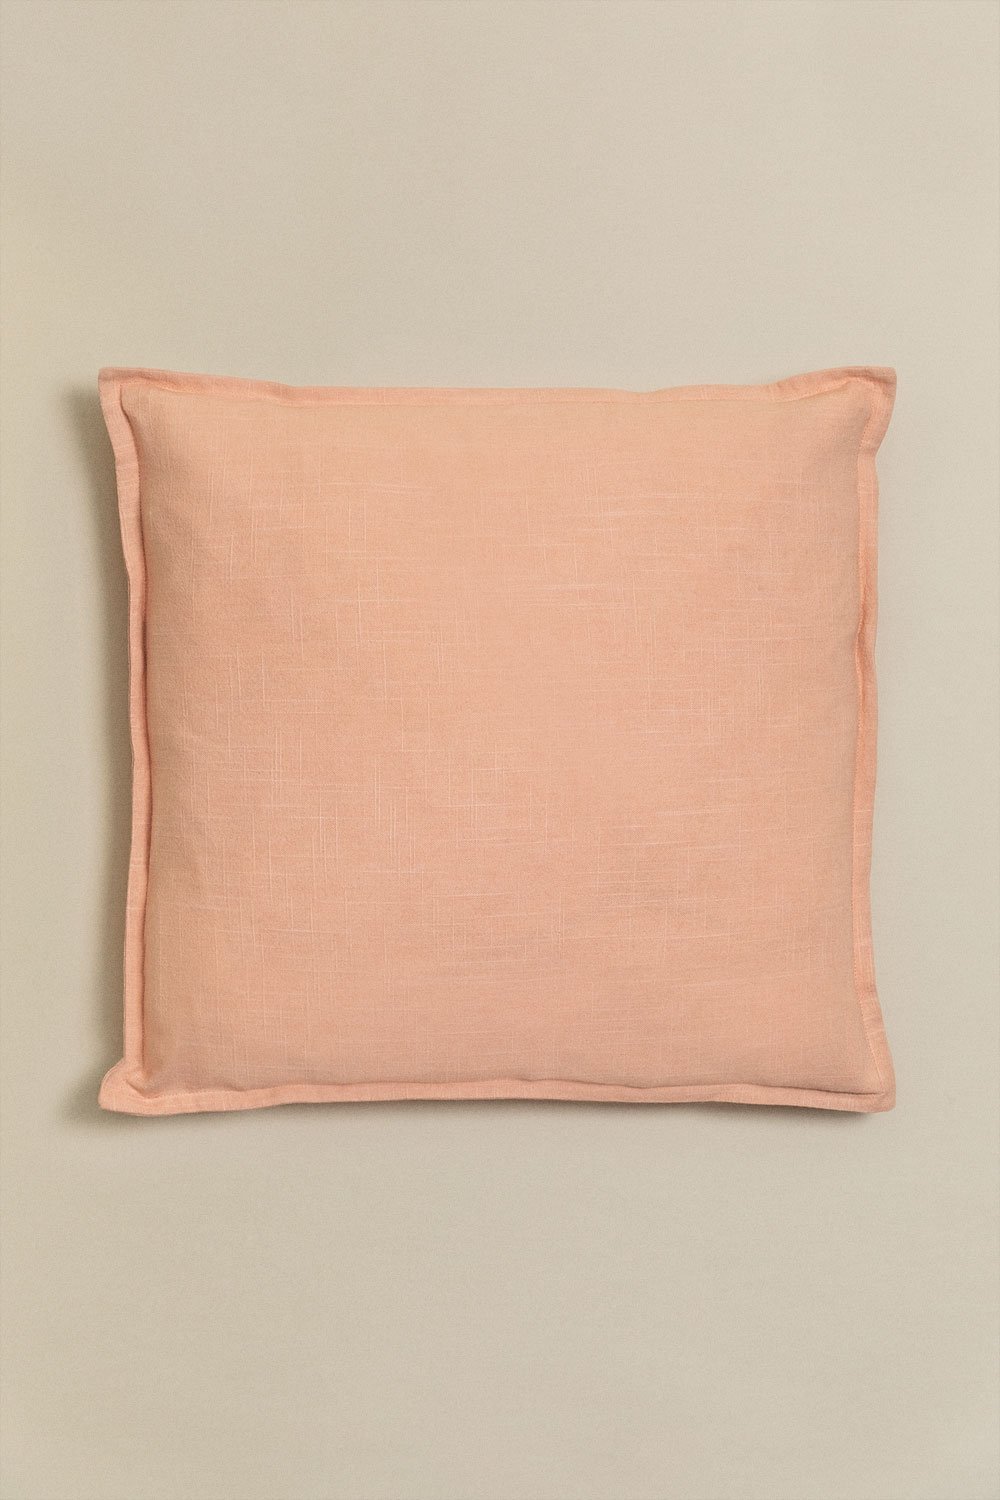 Kwadratowa poduszka bawełniana (45x45 cm) Elezar, obrazek w galerii 1